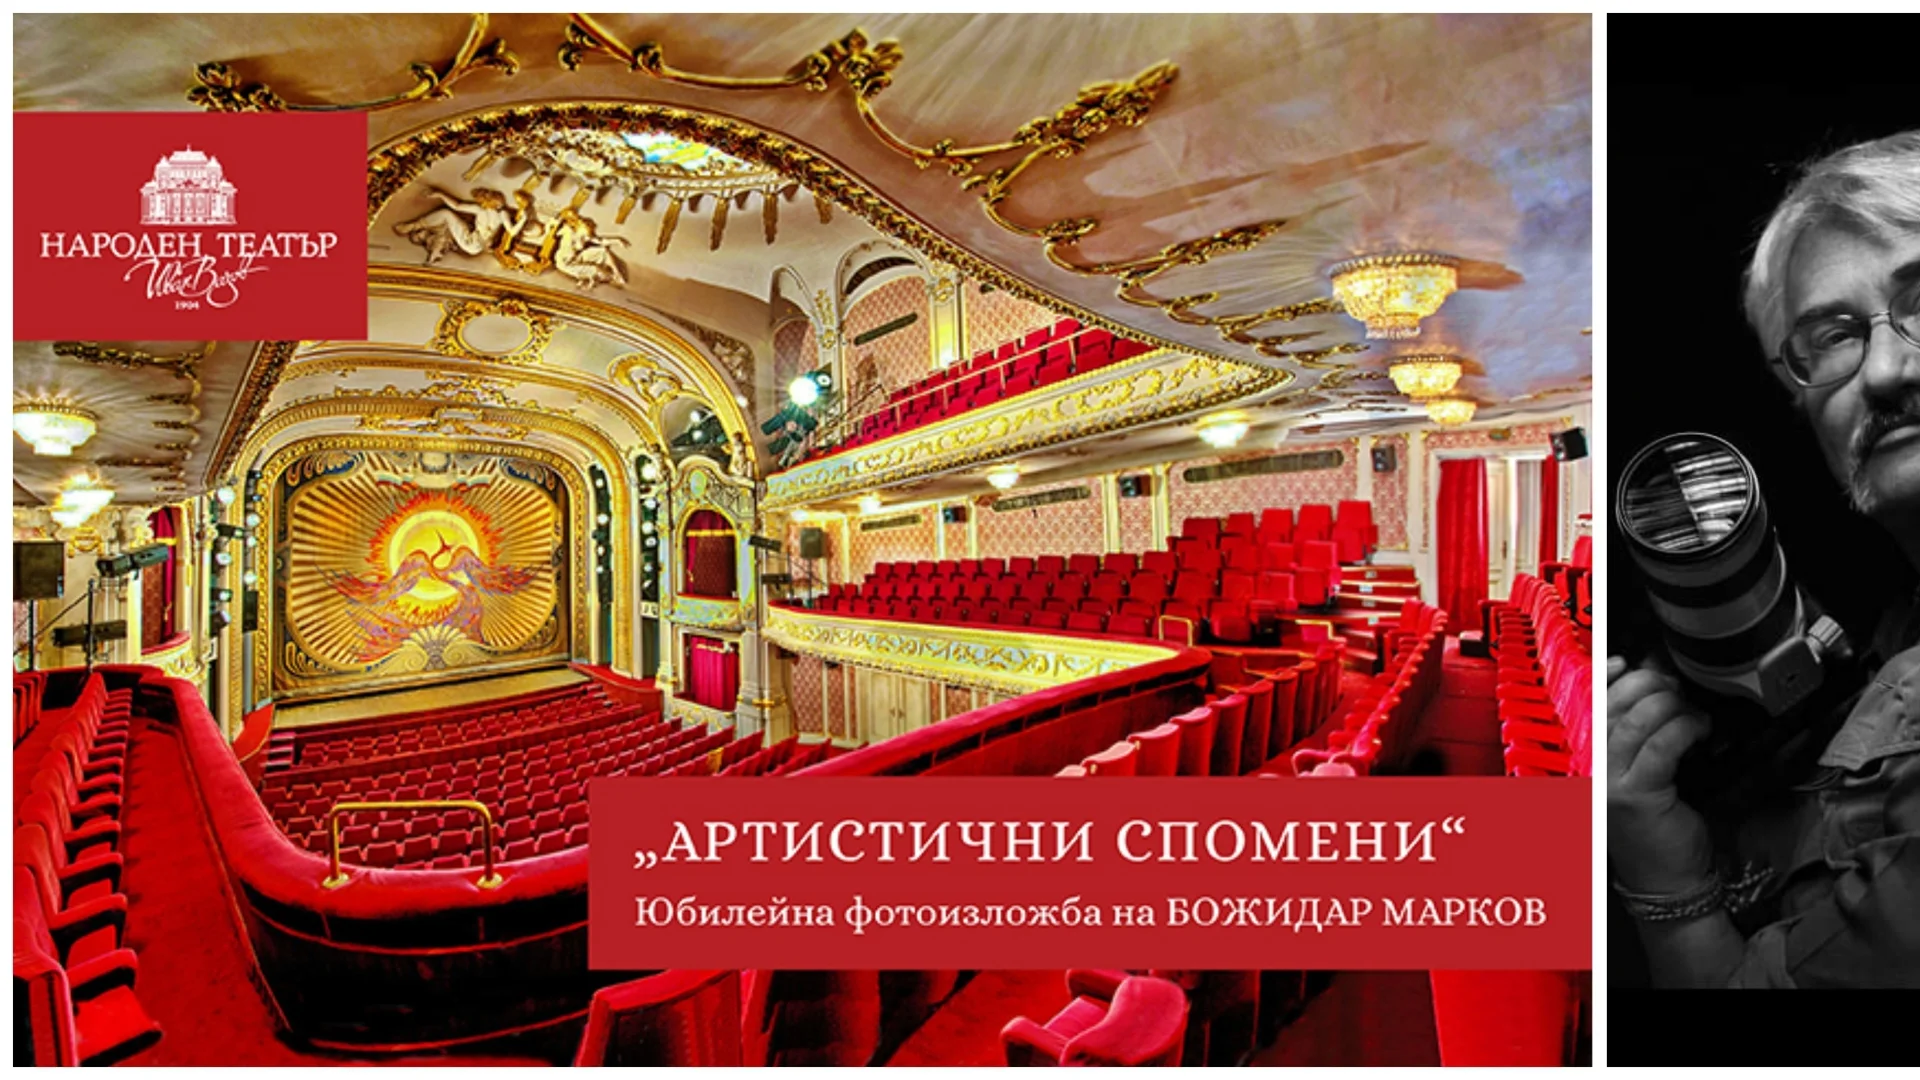 "Артистични спомени": Юбилейна фотоизложба на Божидар Марков в Народния театър